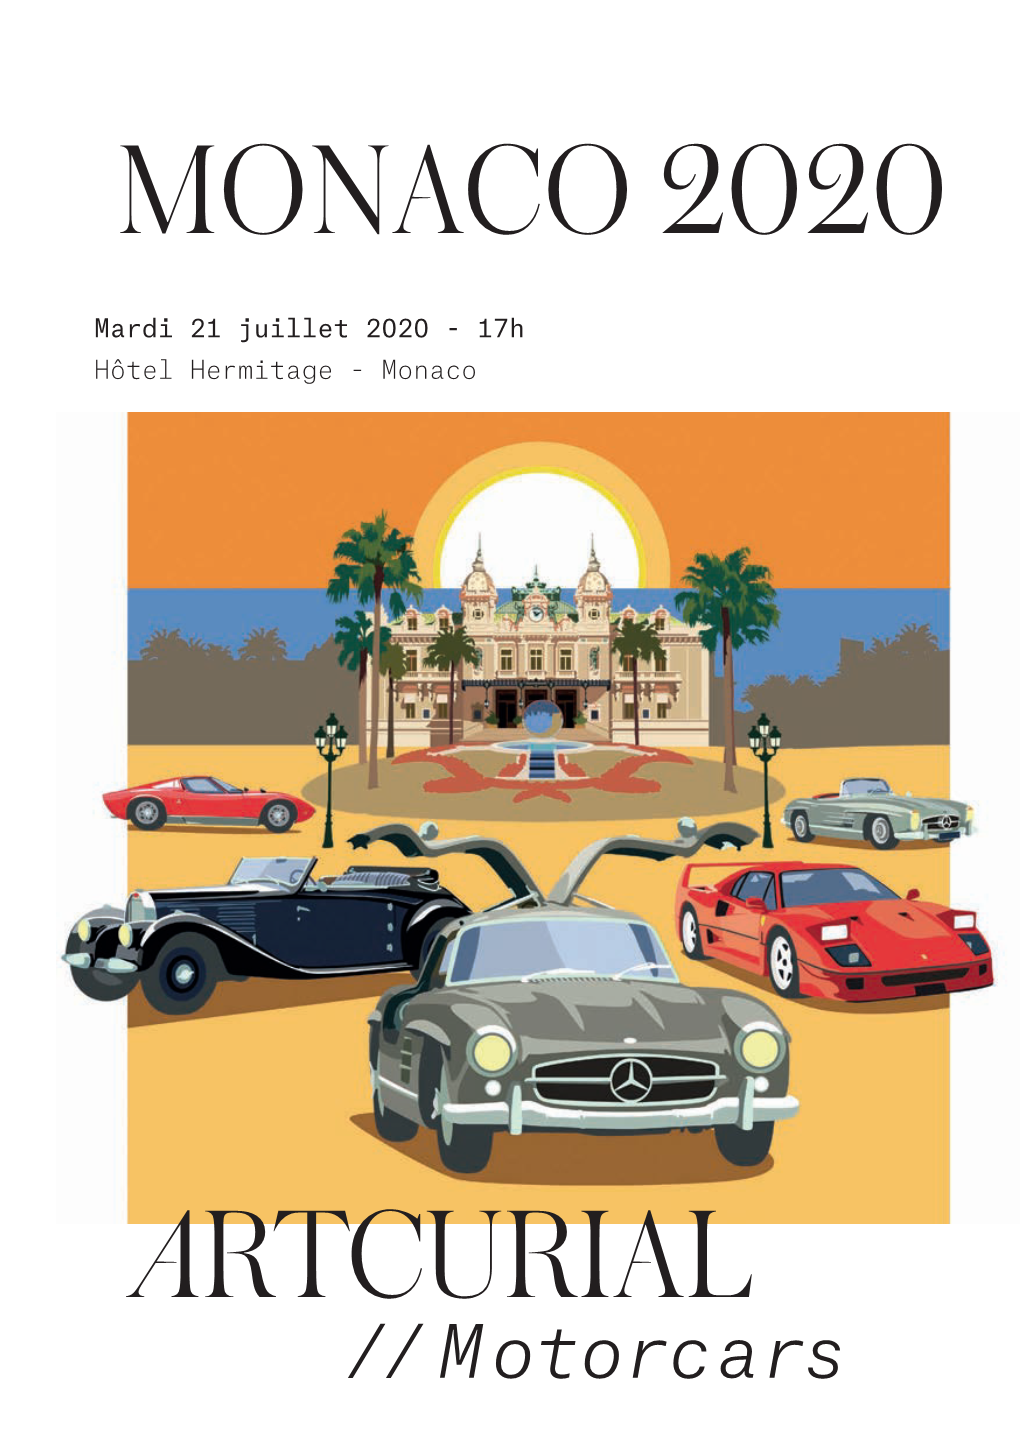 Monaco 2020 by Artcurial Motorcars | 21.07.2020